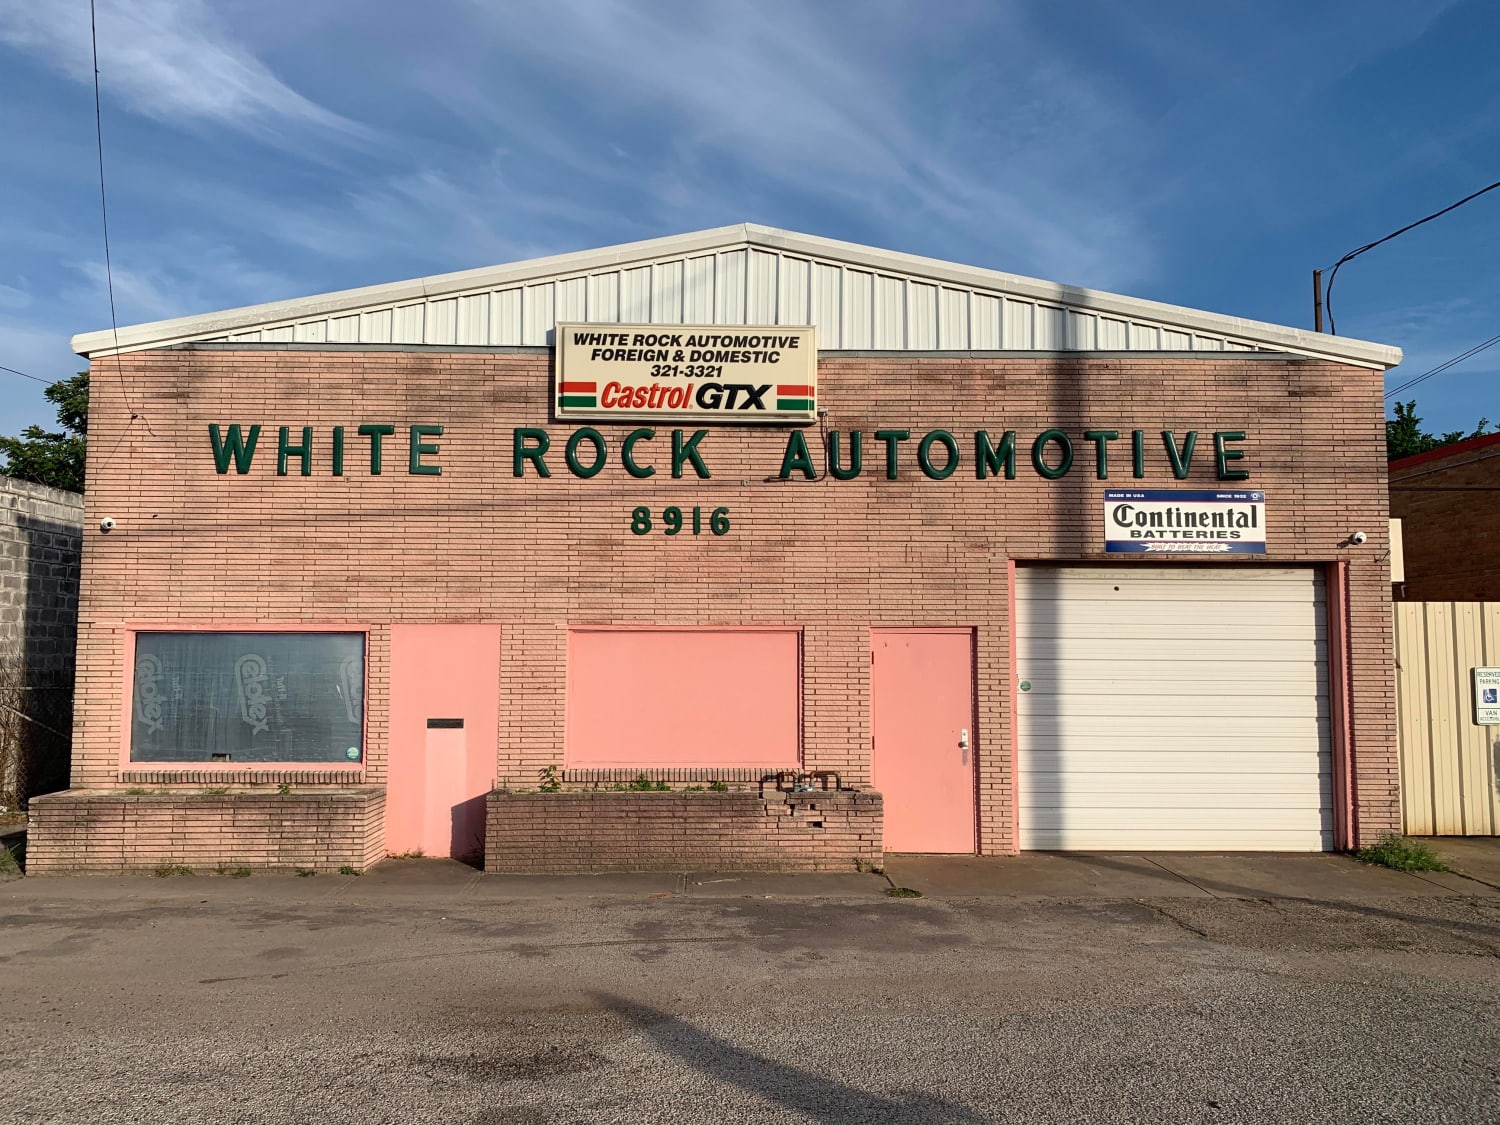 White Rock Automotive, Dallas